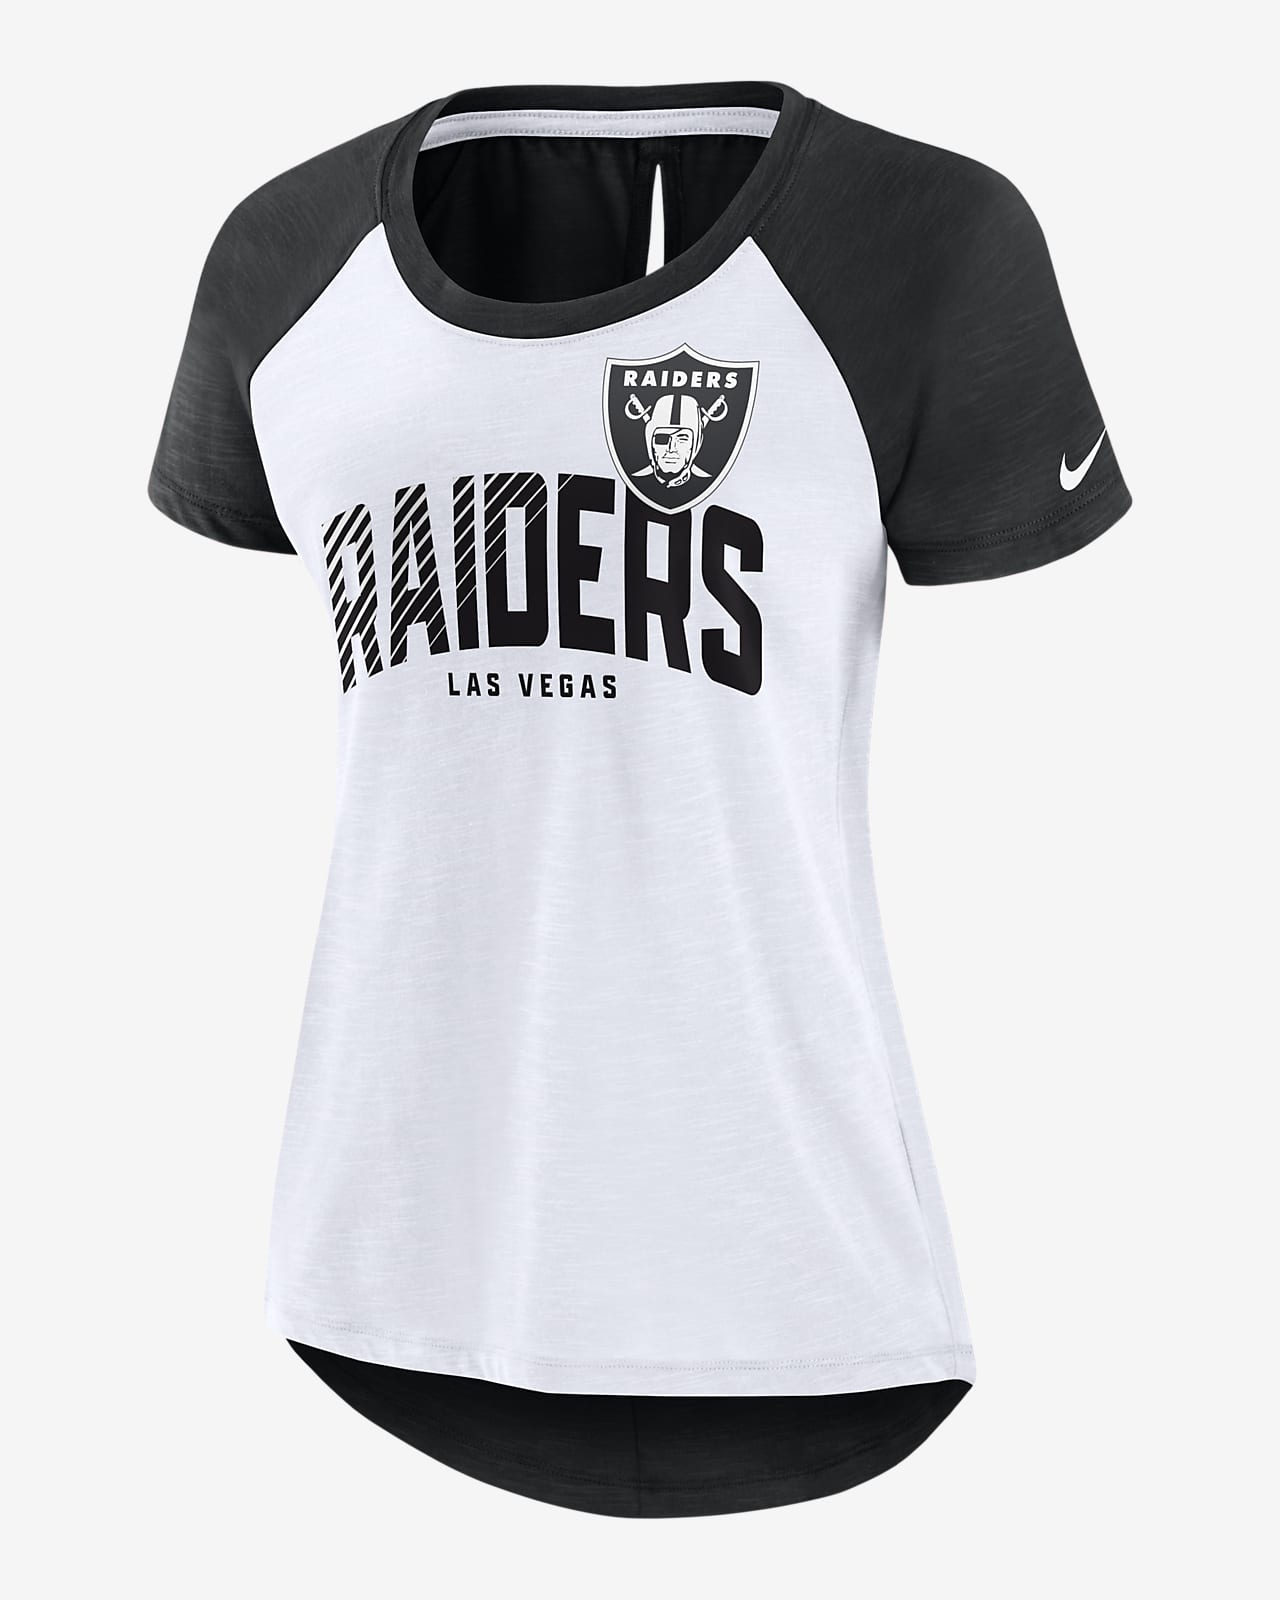 raiders womens shirt